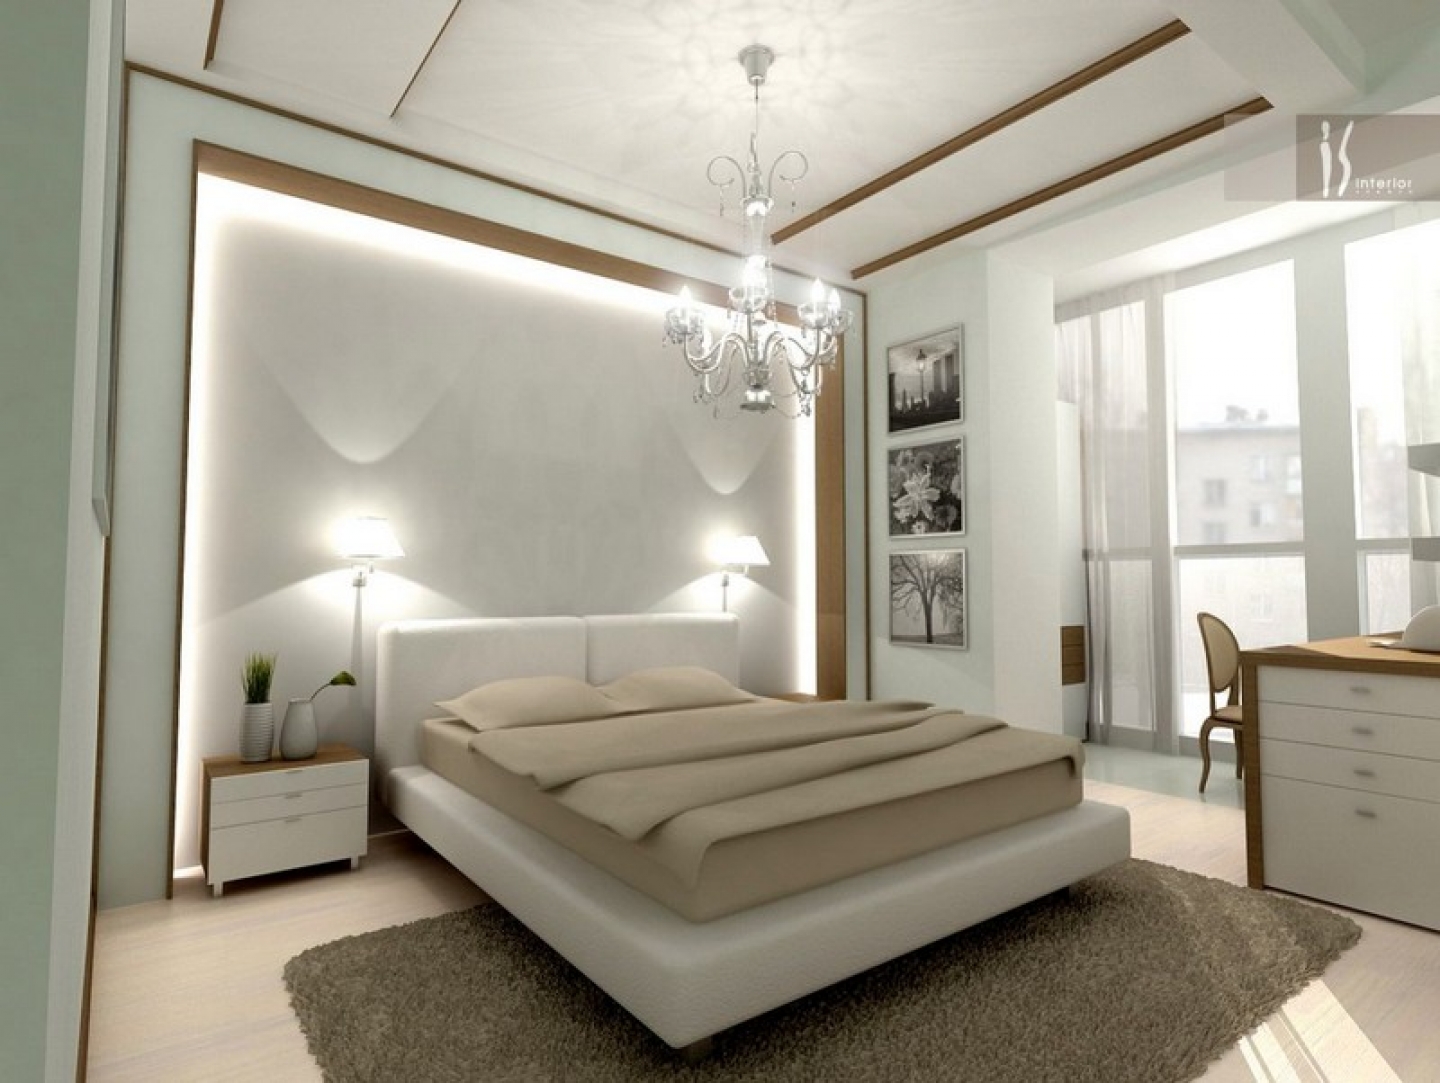 bedroom designs cool